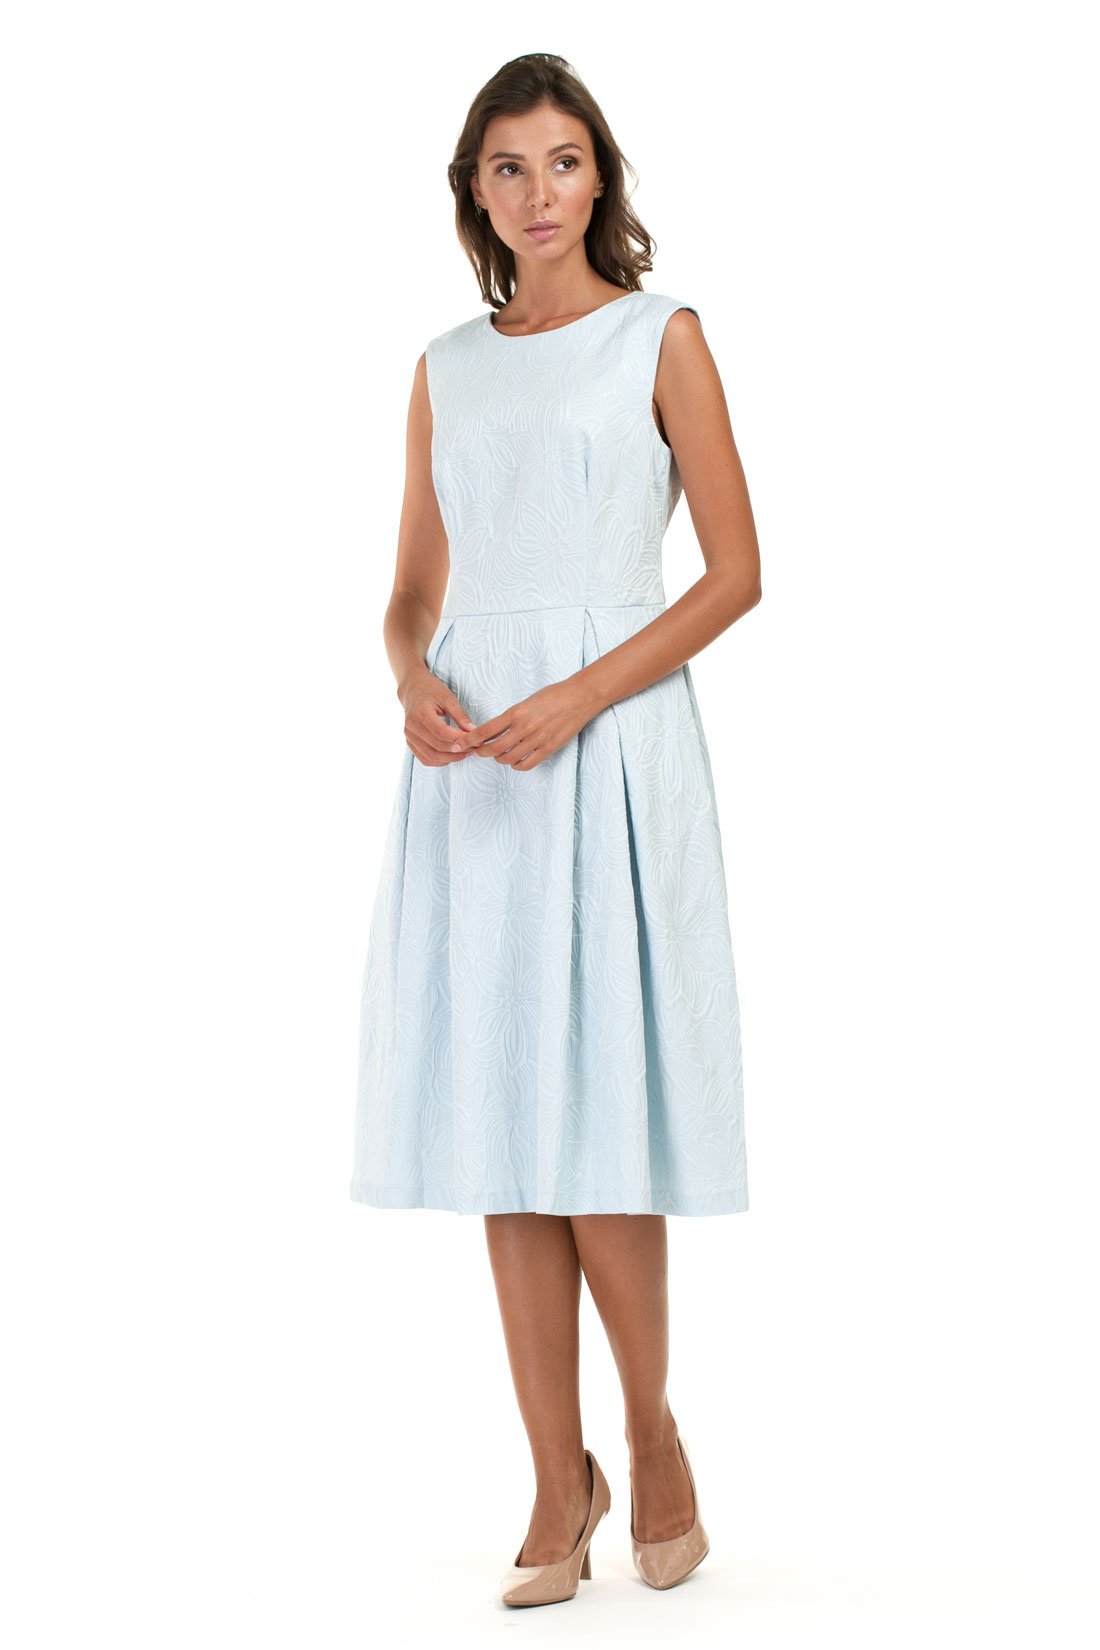 Платье из жаккардового материала (арт. baon B457063), размер XS, цвет белый Платье из жаккардового материала (арт. baon B457063) - фото 1